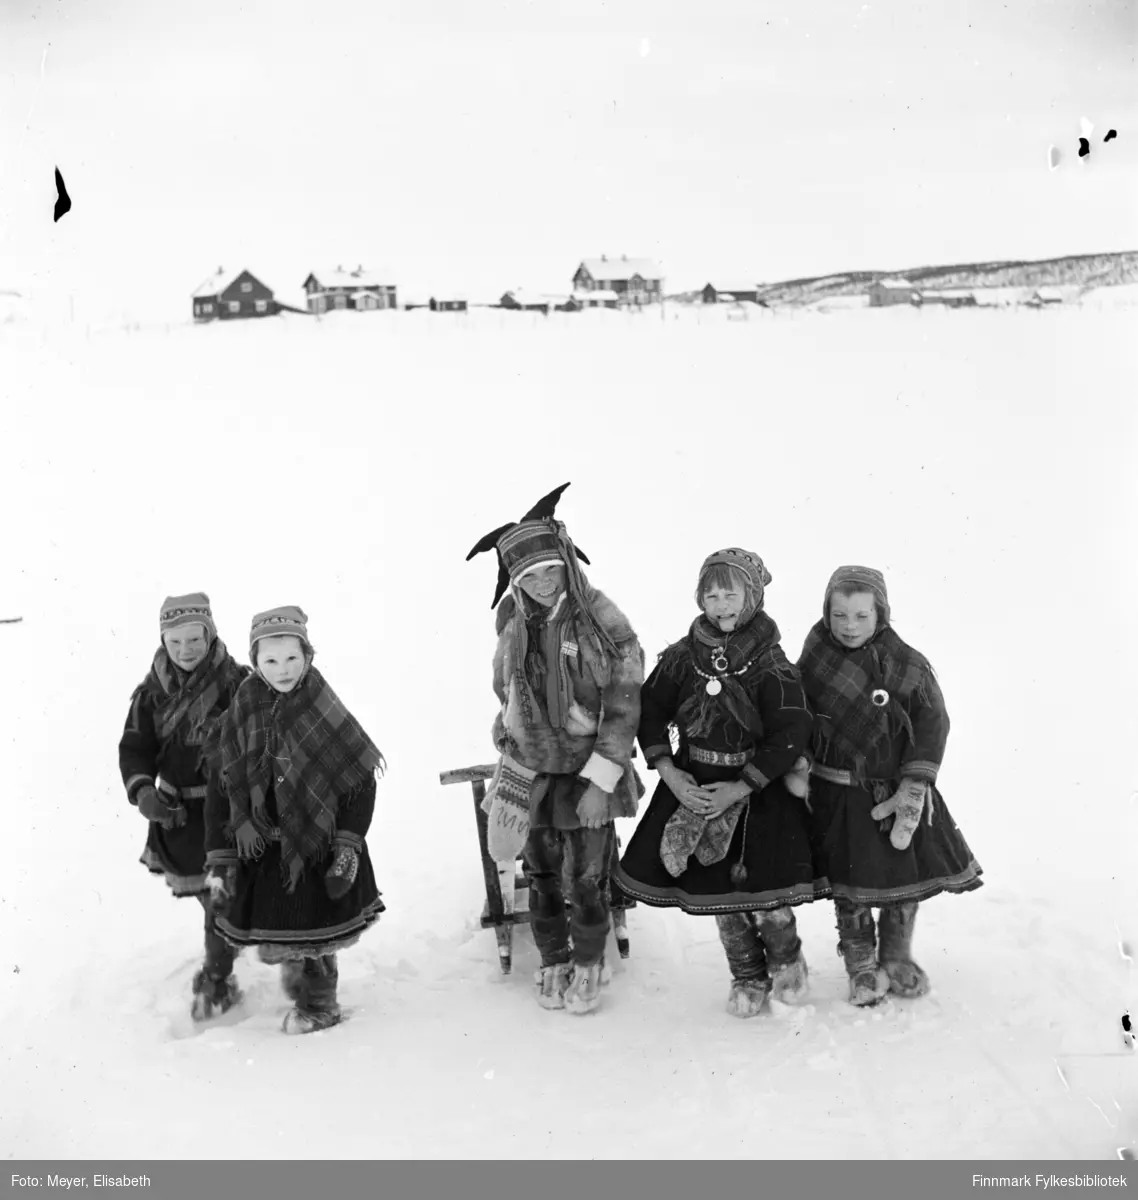 Skolebarn. Fire jenter flankerer en gutt med spark. Alle kledd i samiske kofter og gutten i samisk pesk. Fotografert av Elisabeth Meyer i Kautokeino ved påsketider 1940. I bakgrunnen Prestegården og Lensmannsgården i Kautokeino.